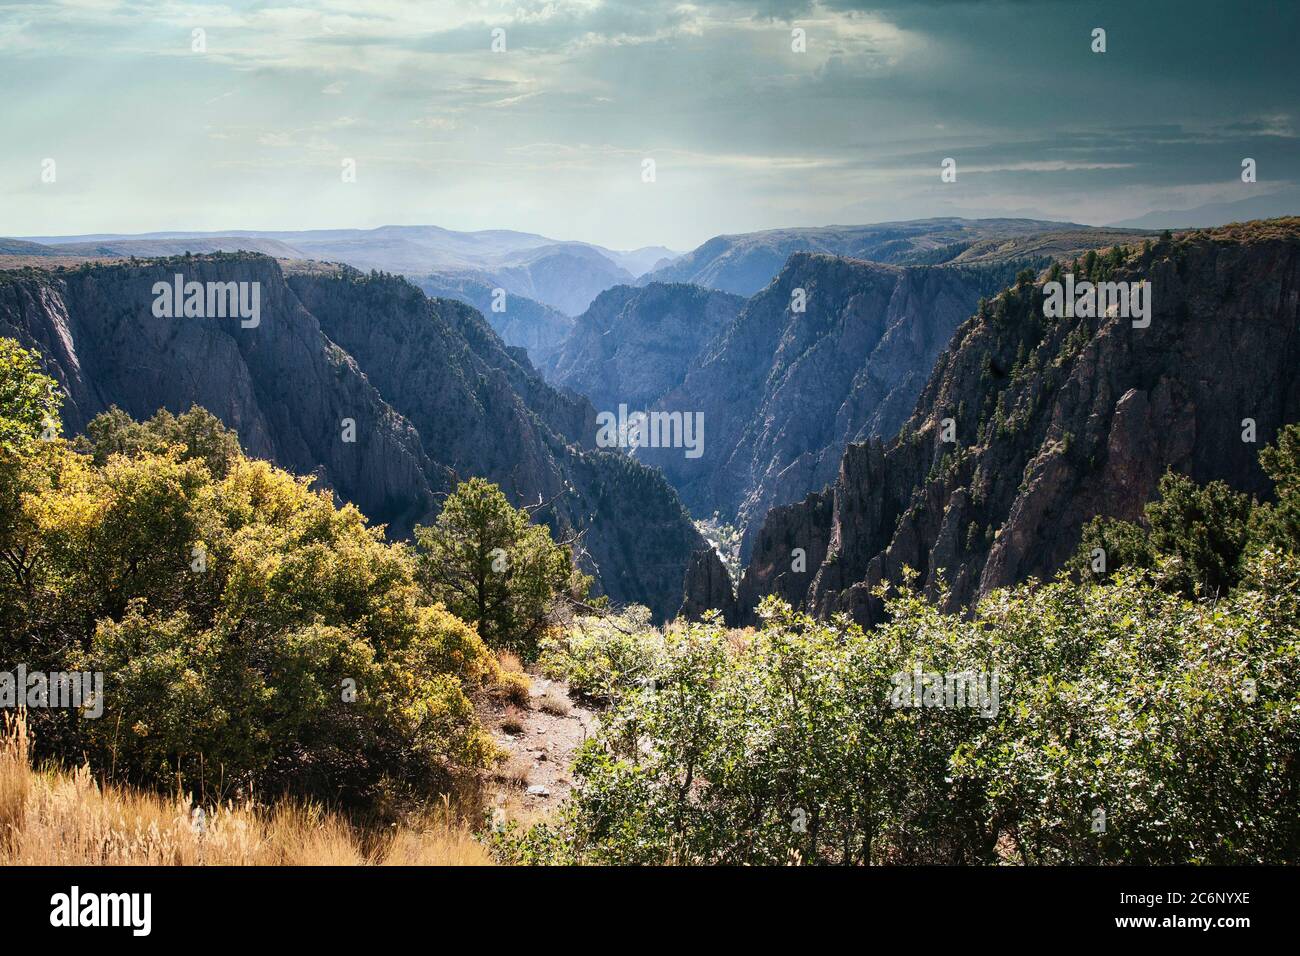 Der Black Canyon National Park enthält einen steilen, meist untraveld Canyon im Westen Colorados. Stockfoto